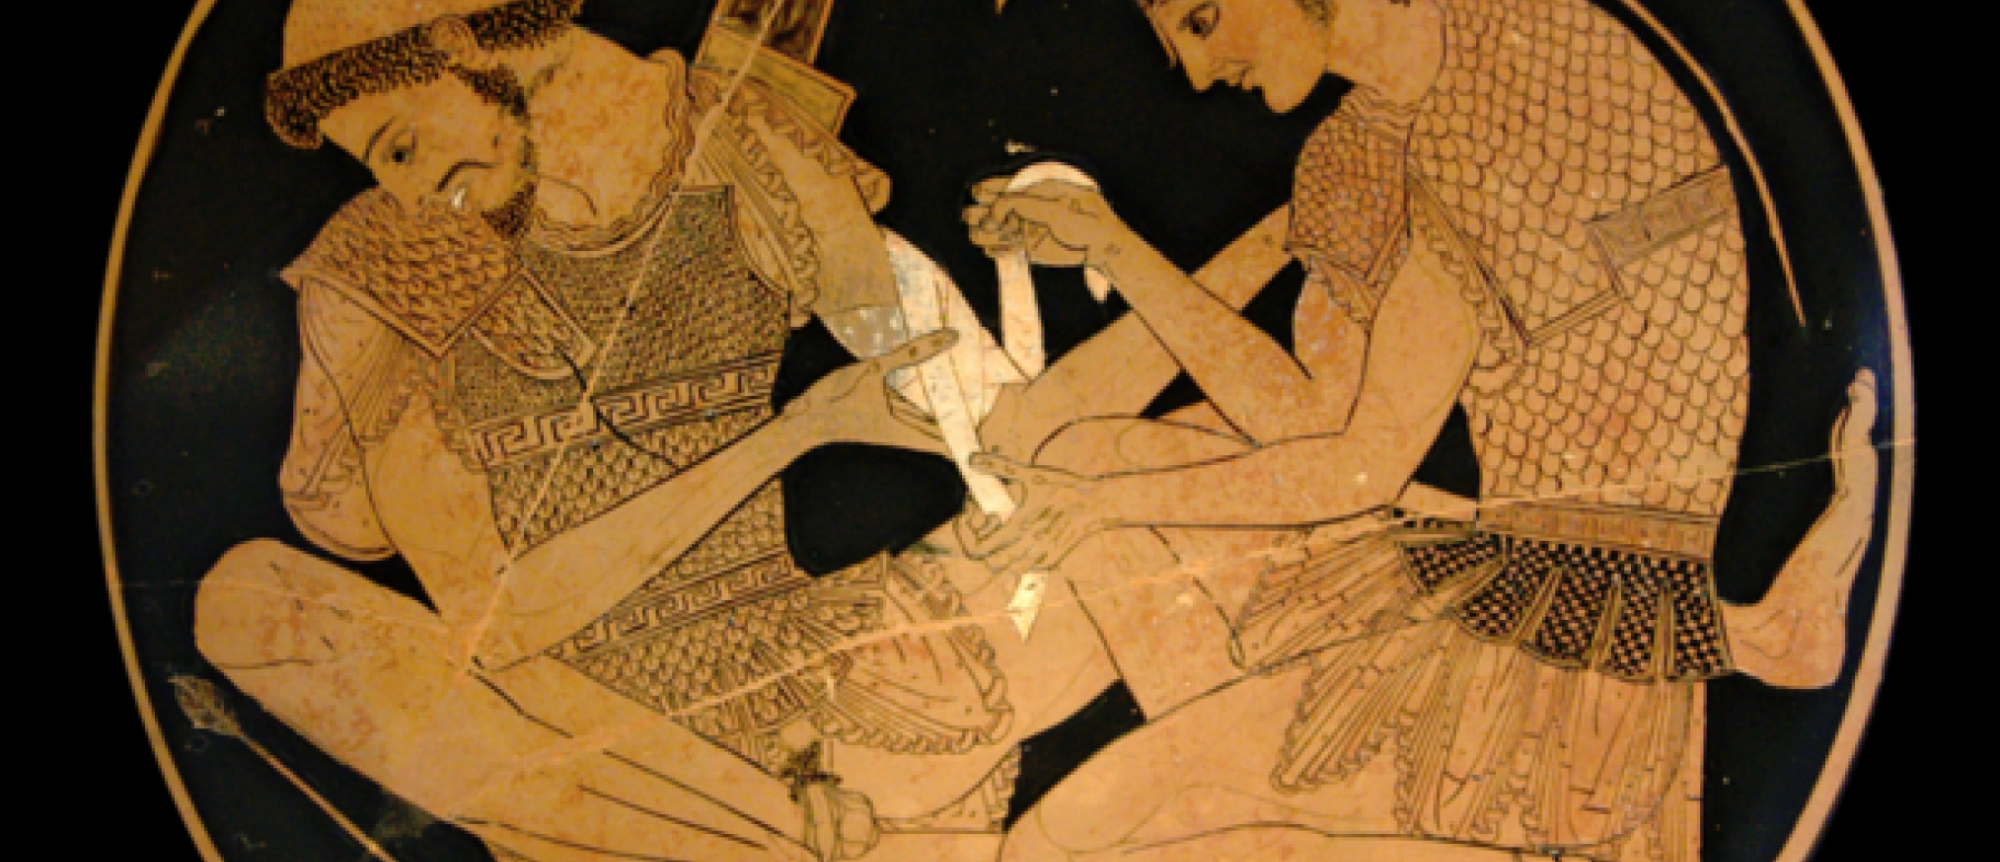 5 Novels based on Greek Mythology